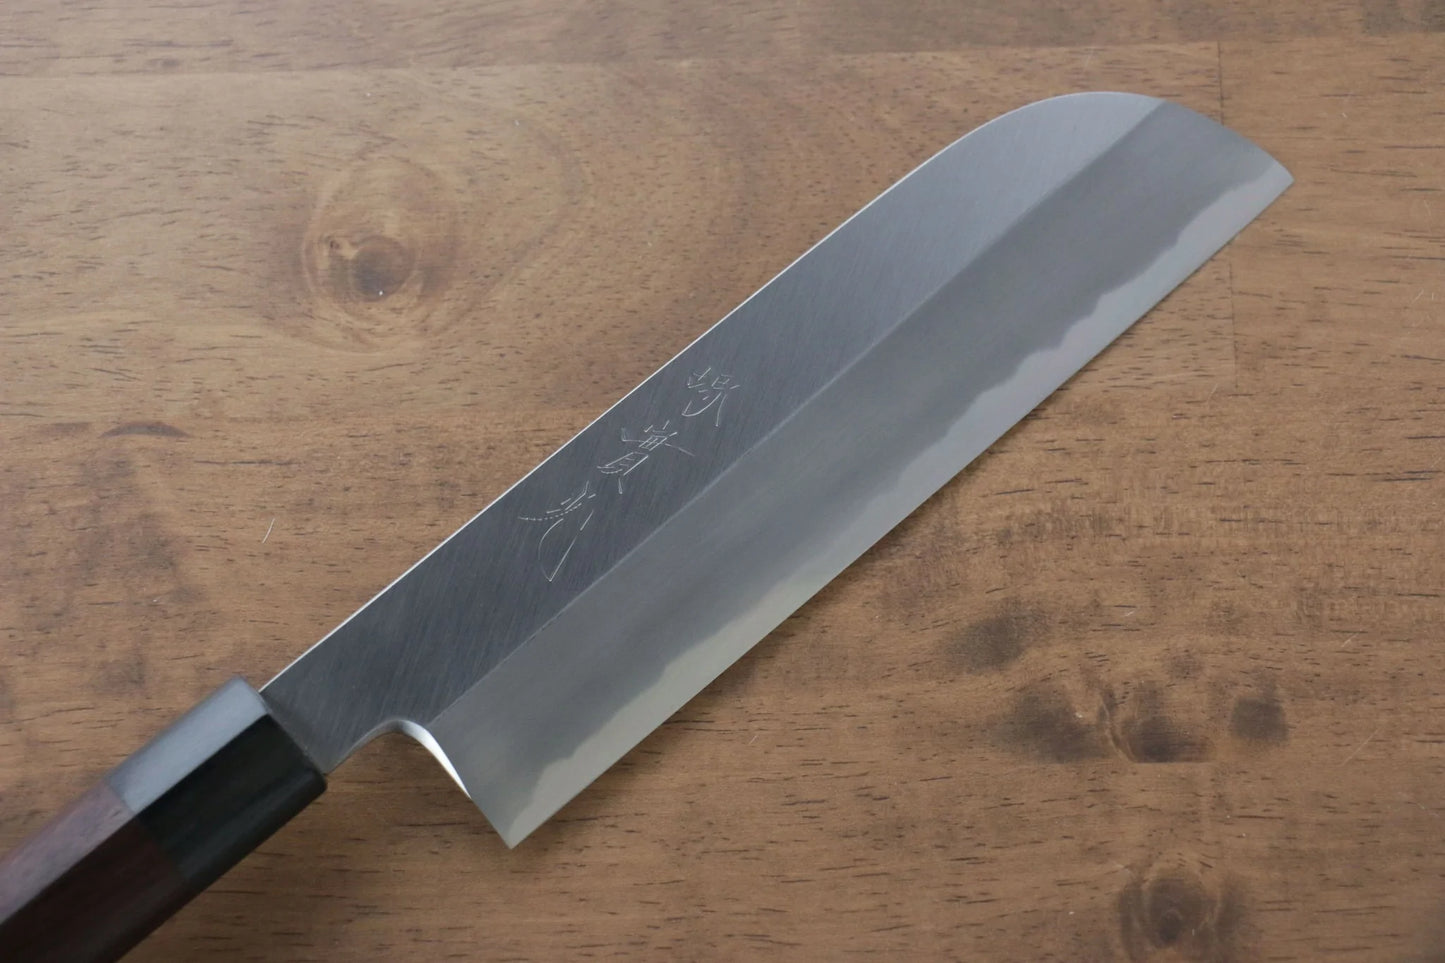 Jikko-Marke Nr. 2, weißes Usuba-Spezialmesser für Obst und Gemüse (halbmondförmig), japanisches Messer, 195 mm Griff aus Sandelholz